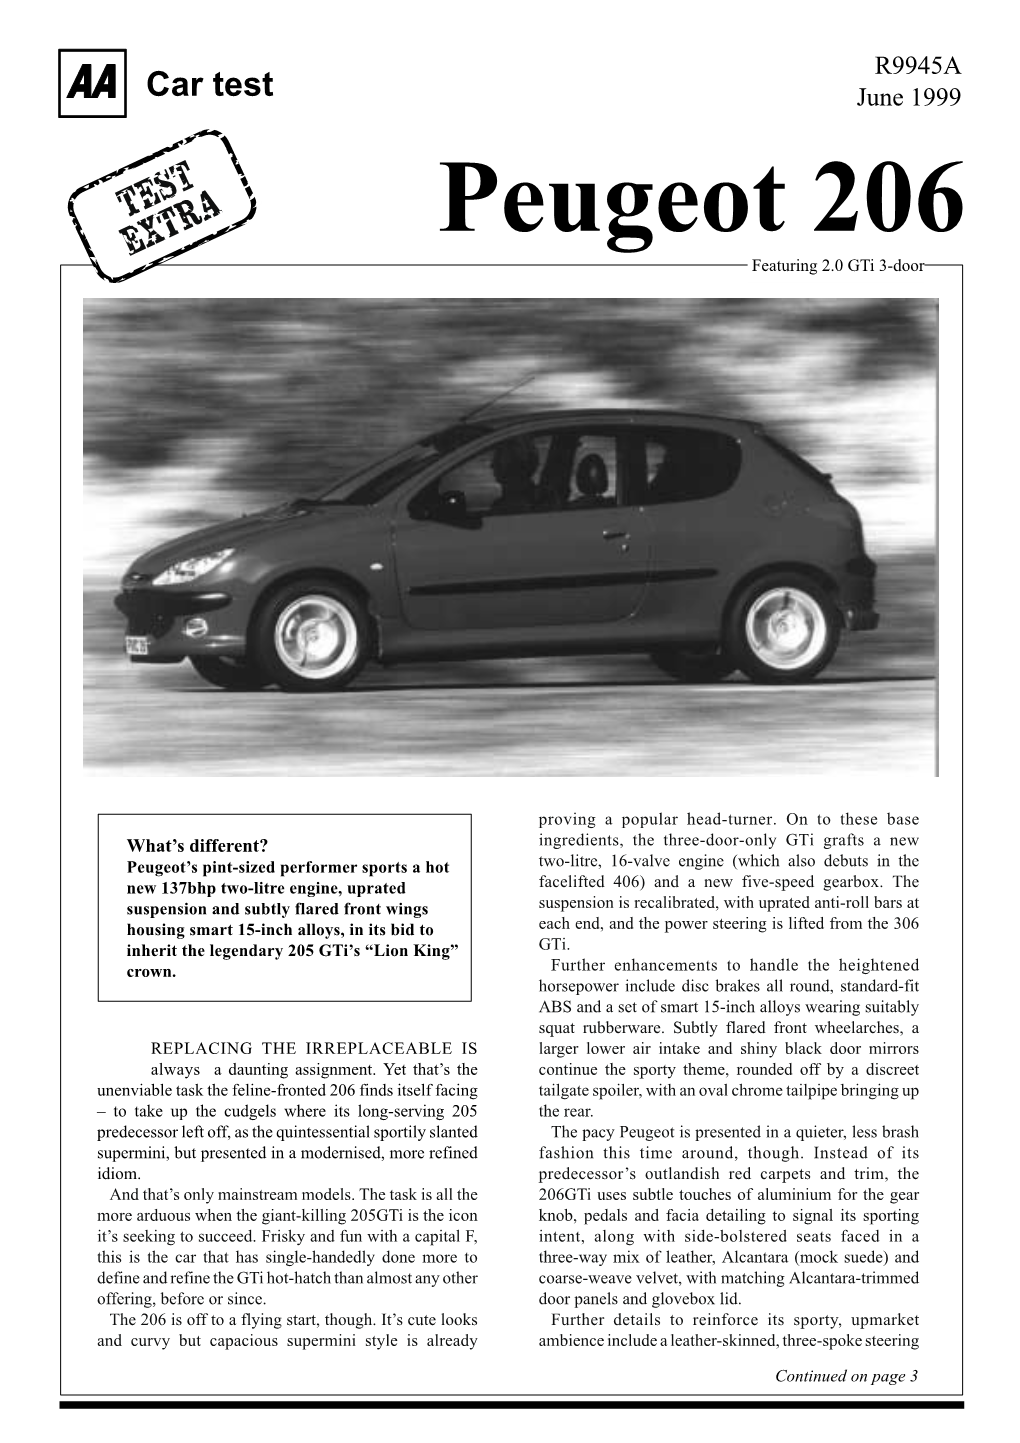 Peugeot 206 EXTRA Featuring 2.0 Gti 3-Door